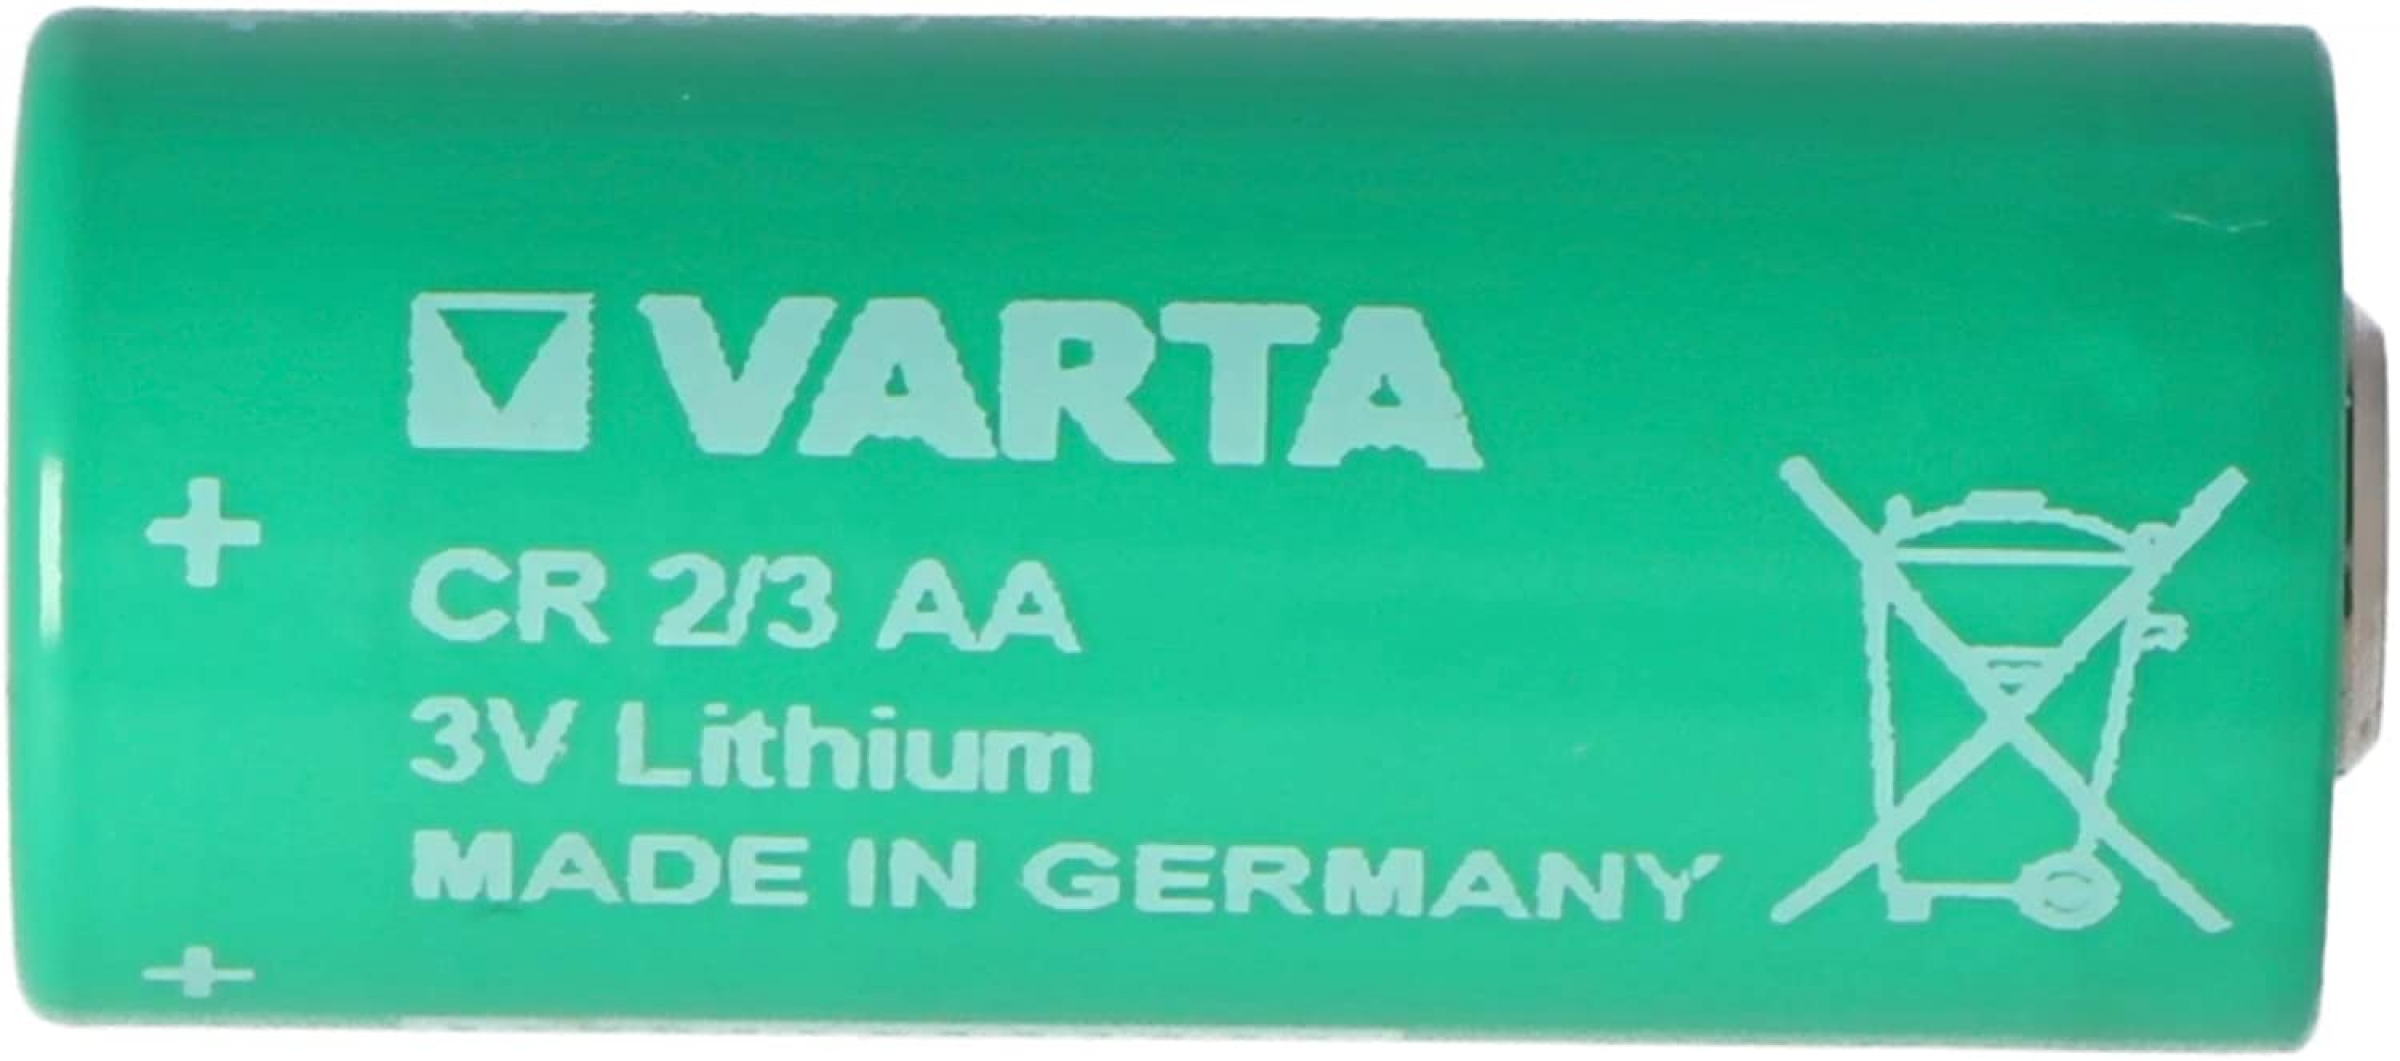 Varta Lithium CR 2/3 AA 6237 3.0 Volt NO TABS - loose 1